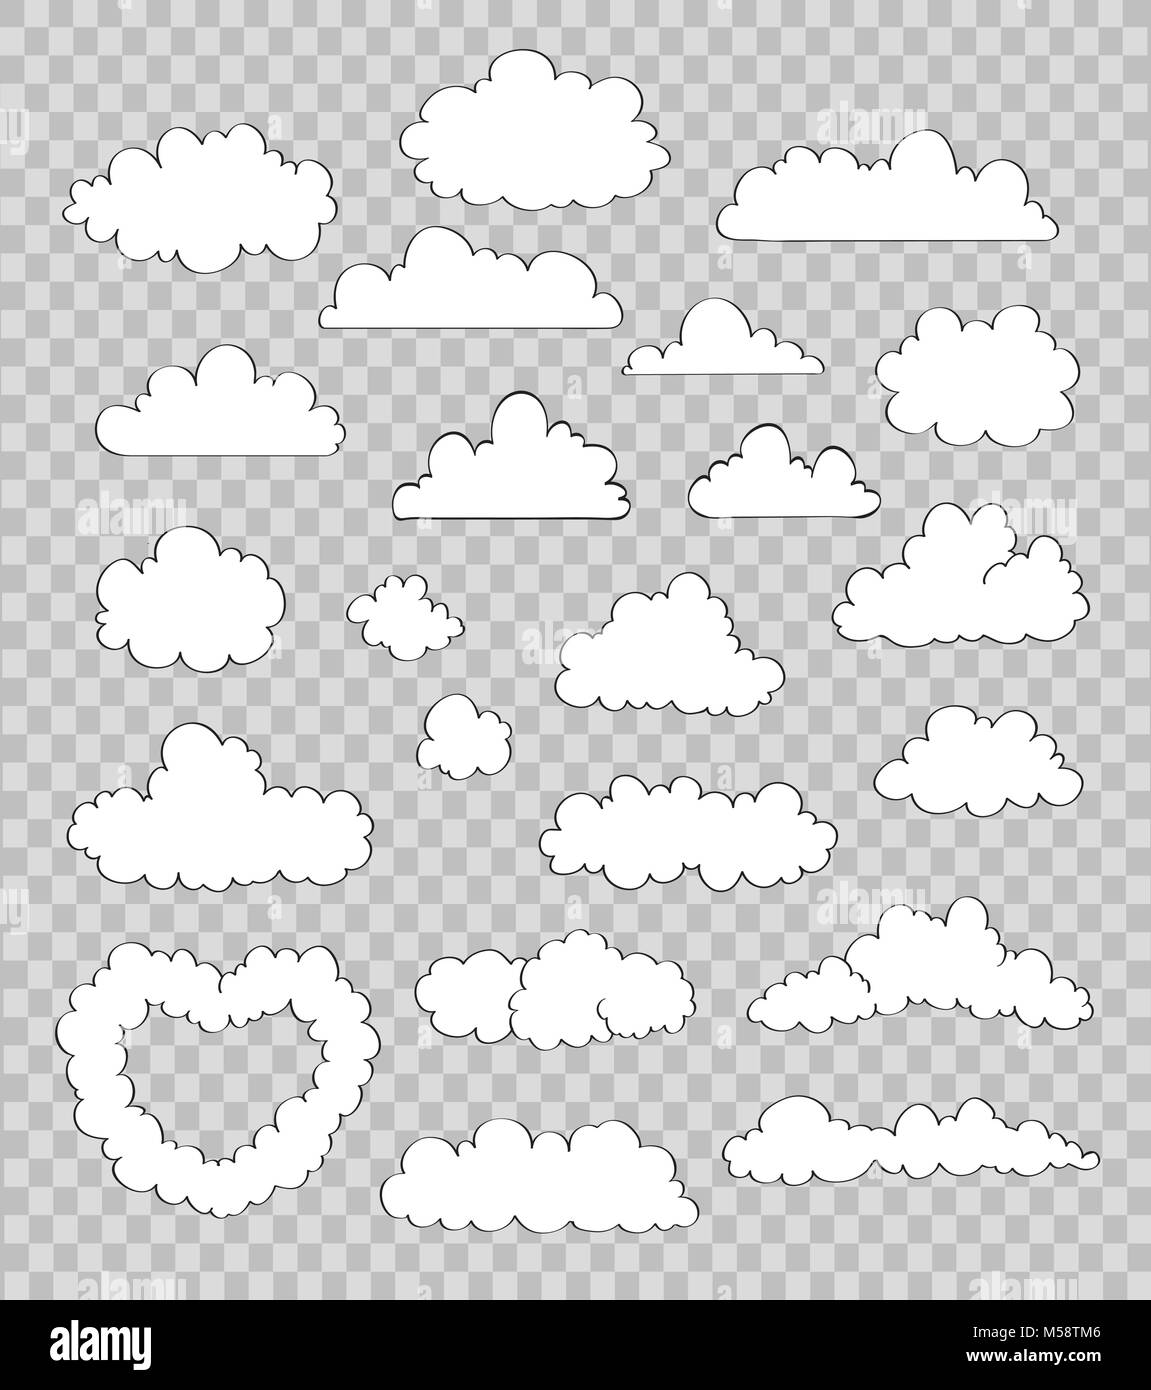 Einstellen der Wolken auf transparentem Hintergrund. Vektor Stock Vektor